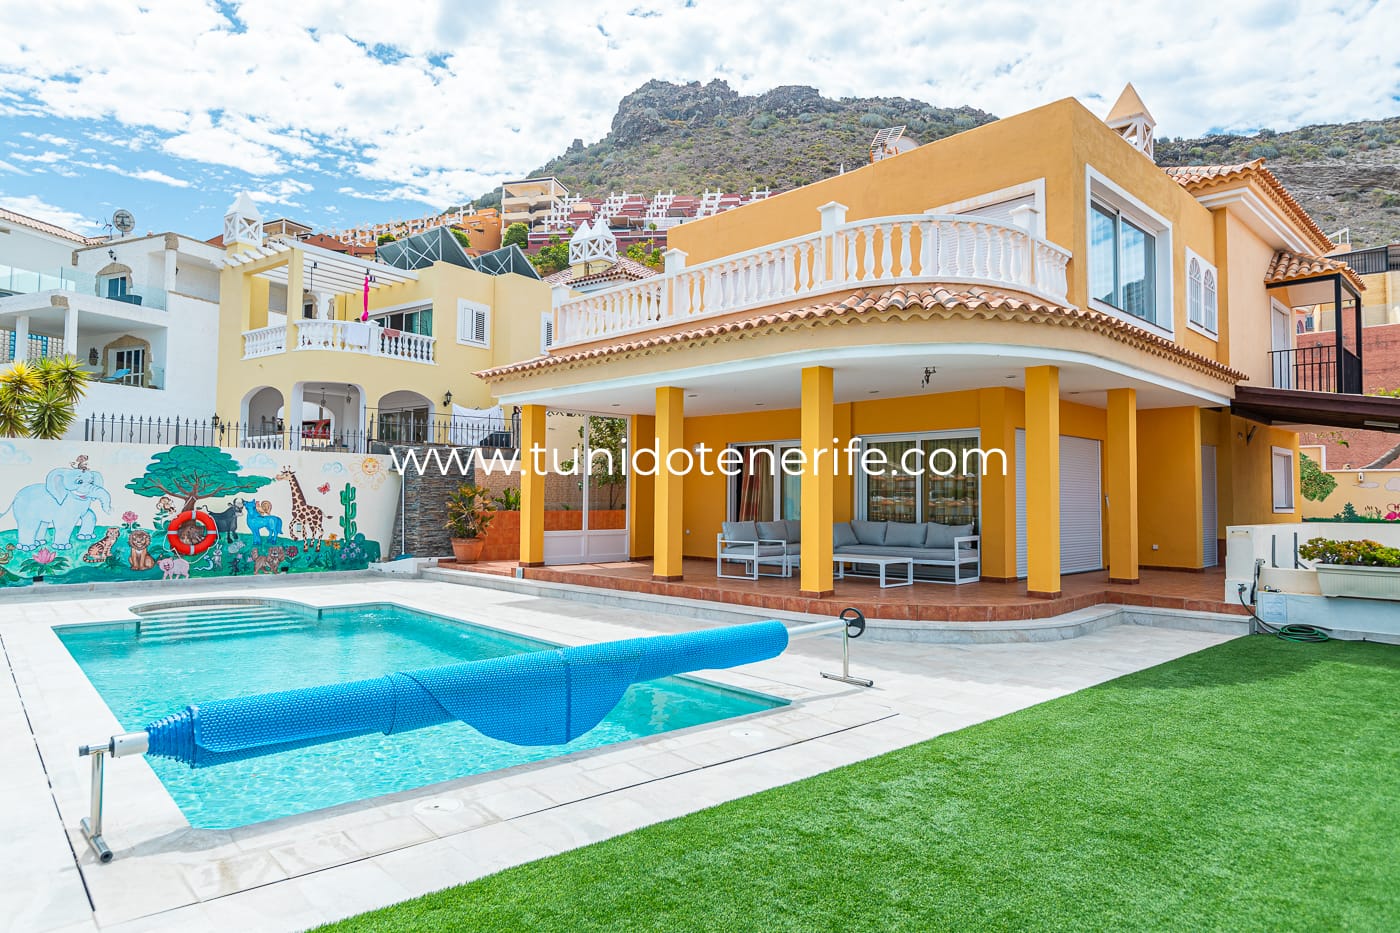 Vilă cu piscină privată și vedere magnifică, Tu Nido Tenerife